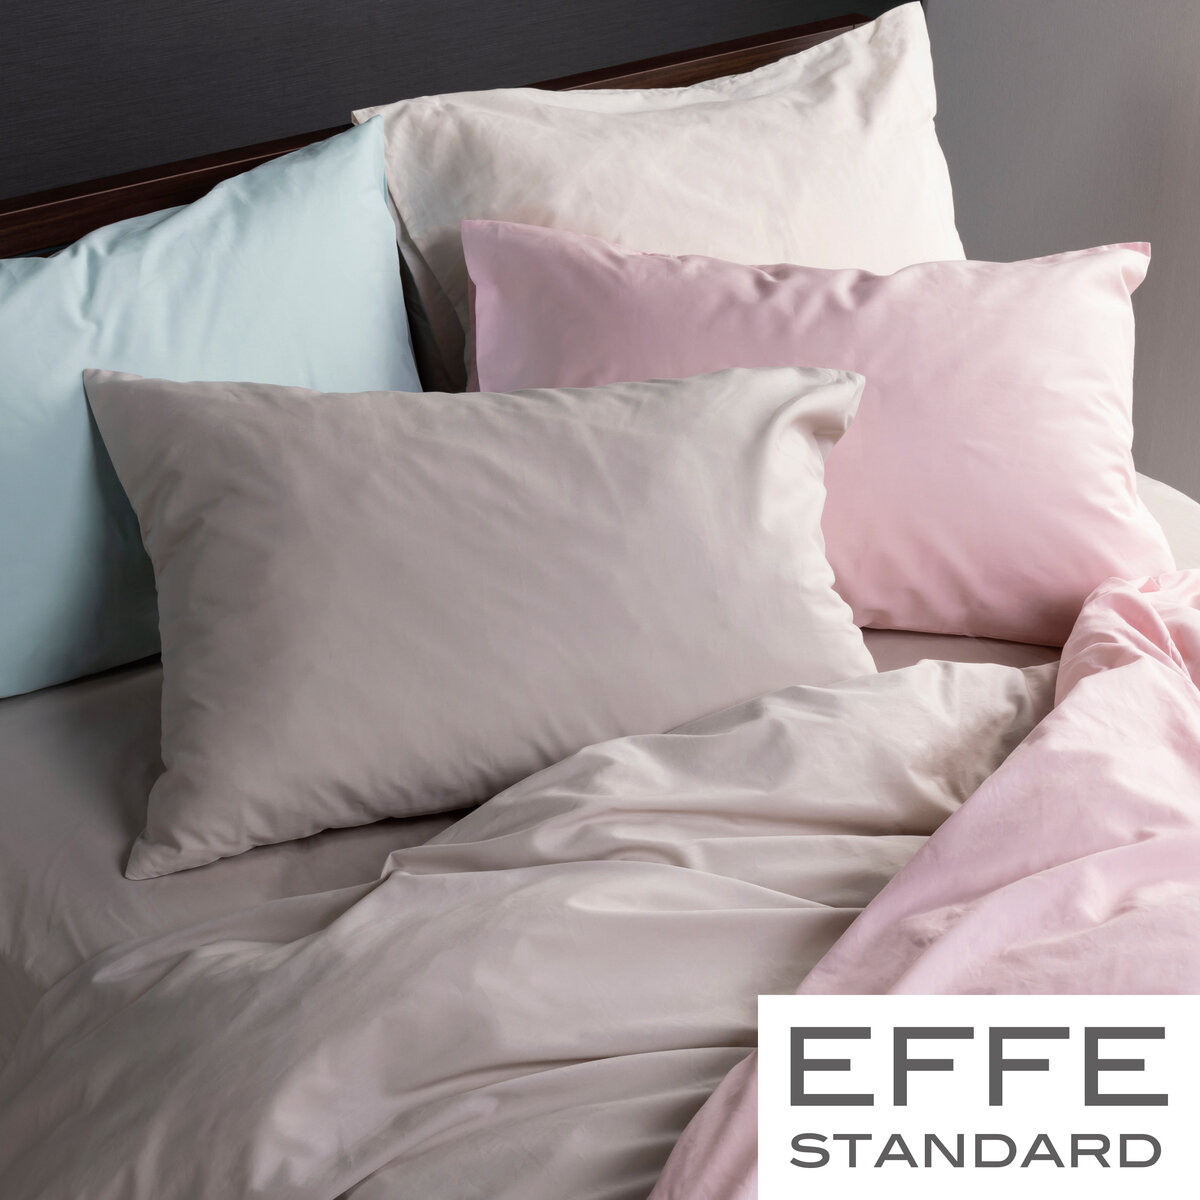 フランスベッド 寝装品 3点セット エッフェスタンダード シングル ピンク